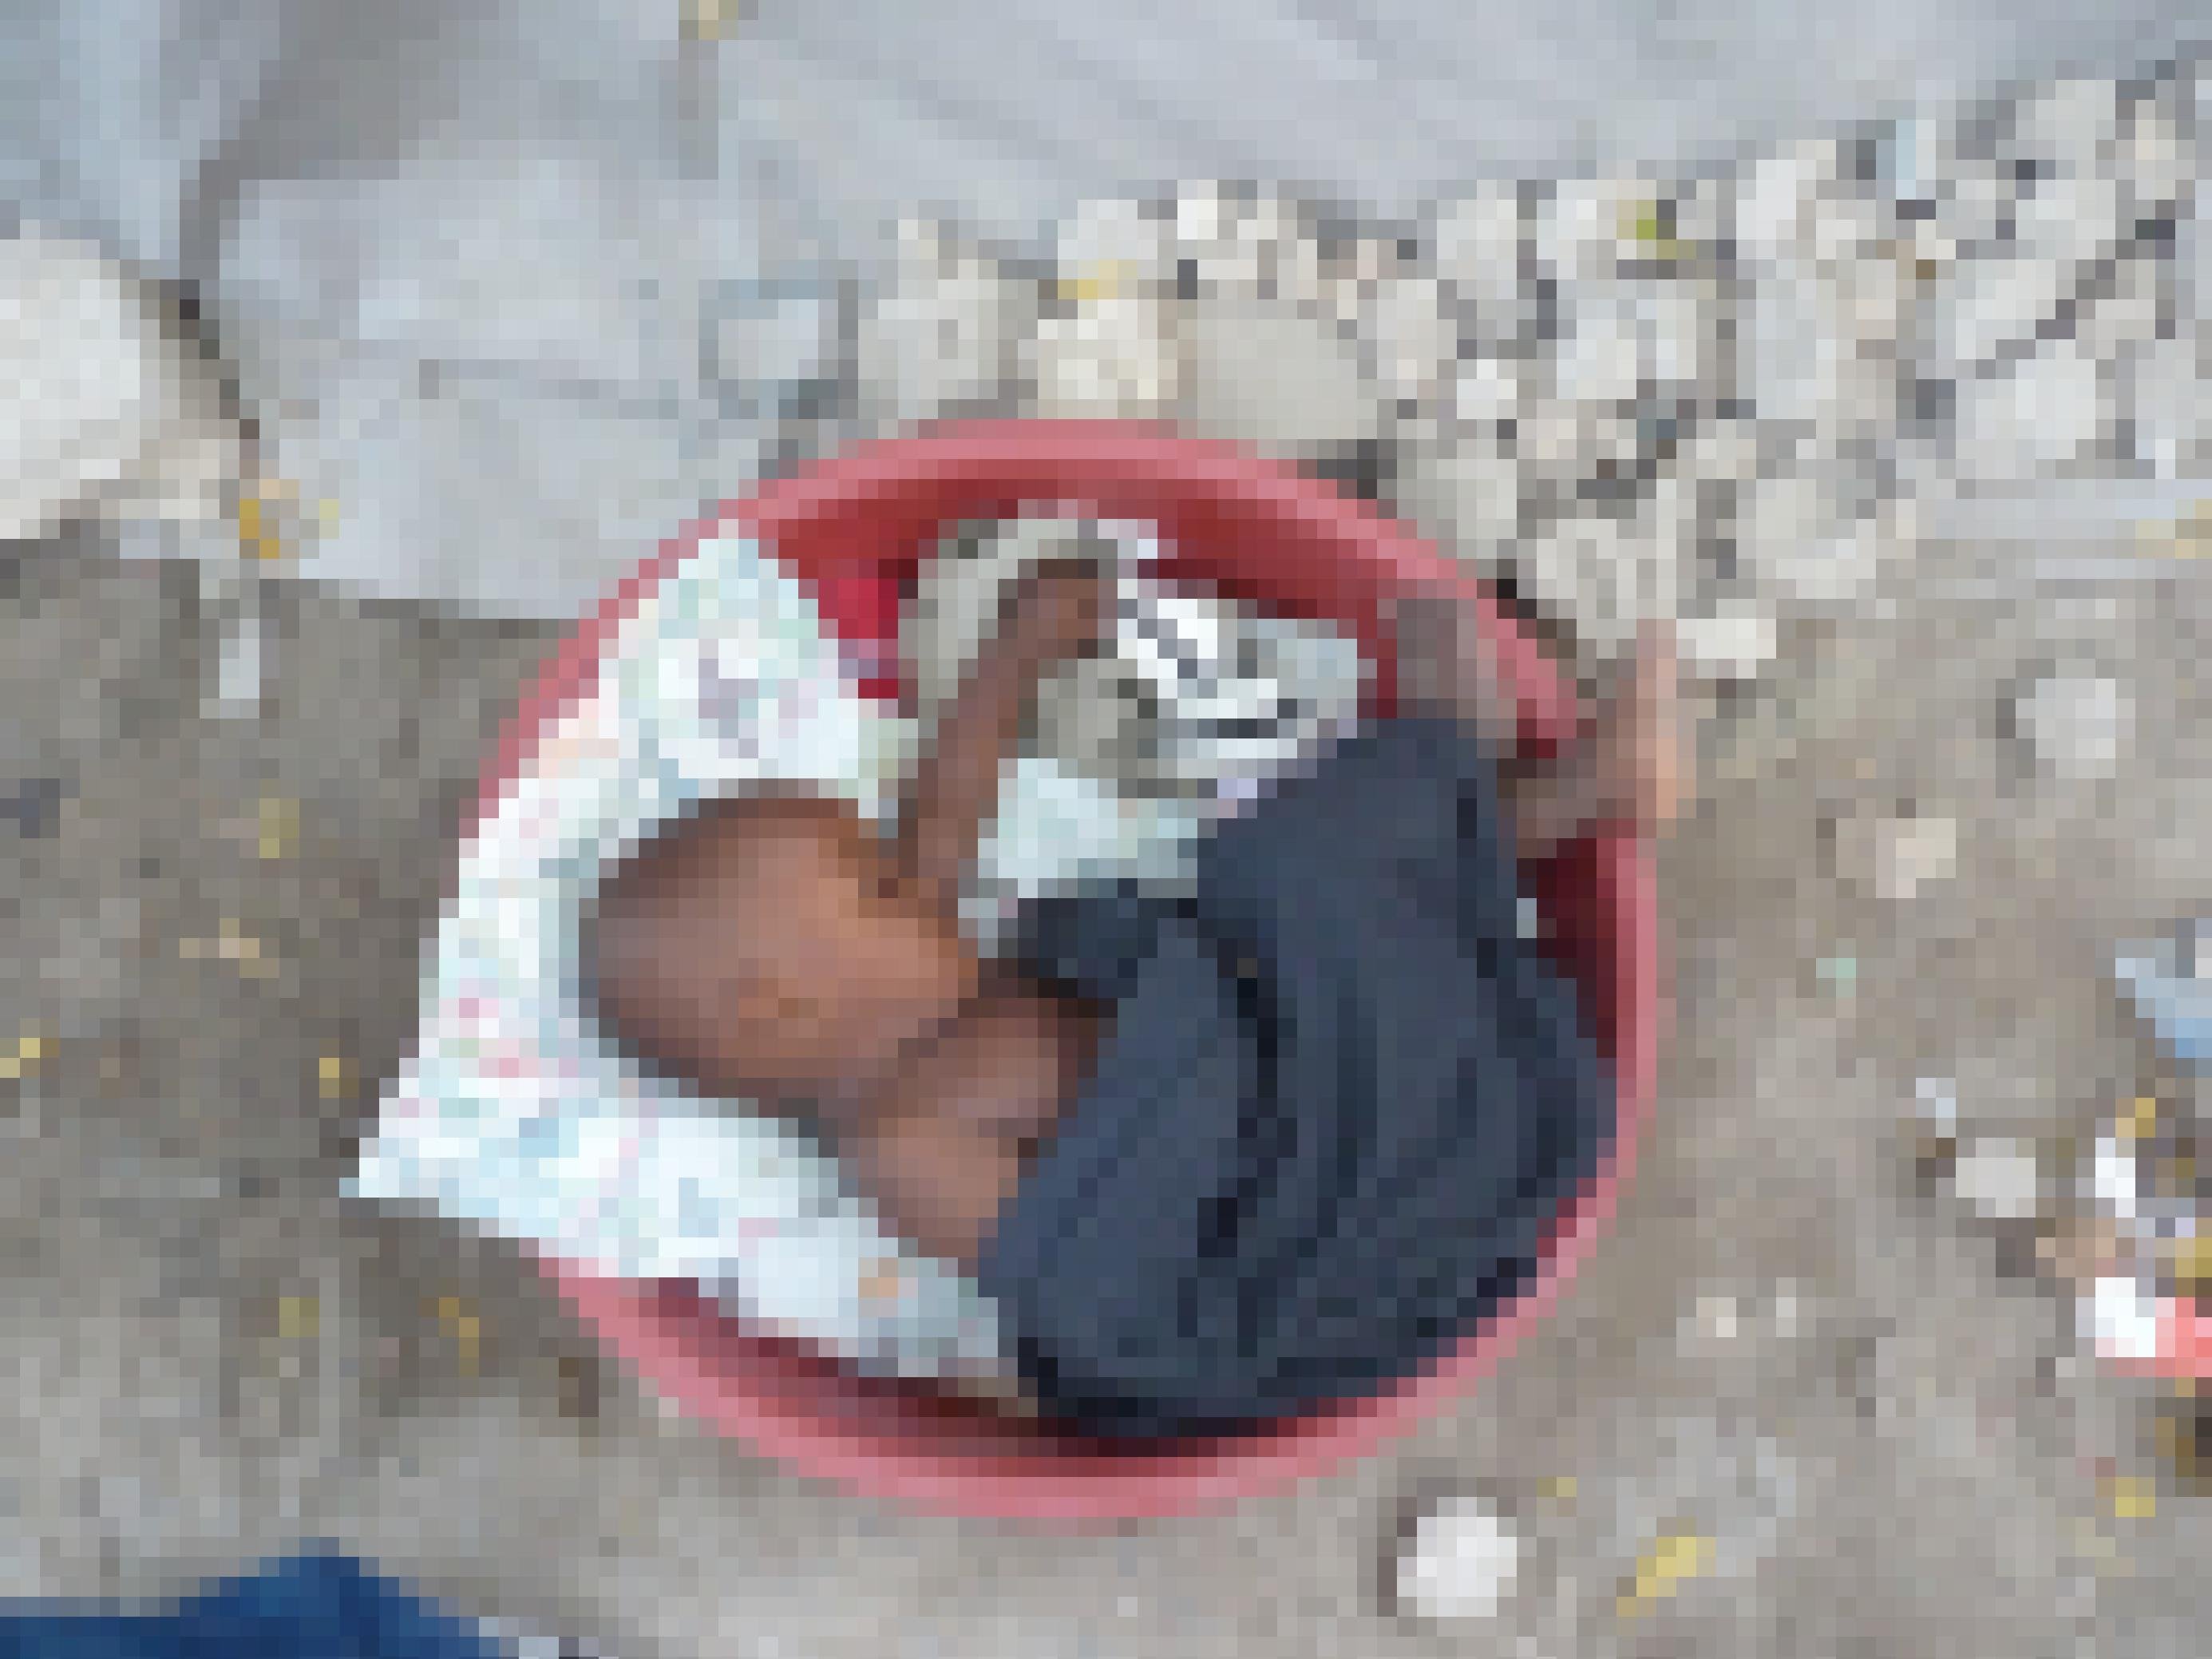 Ein Baby schläft eingerollt in einer runden Plastikschüssel in einem Flüchtlingslager in Haiti.